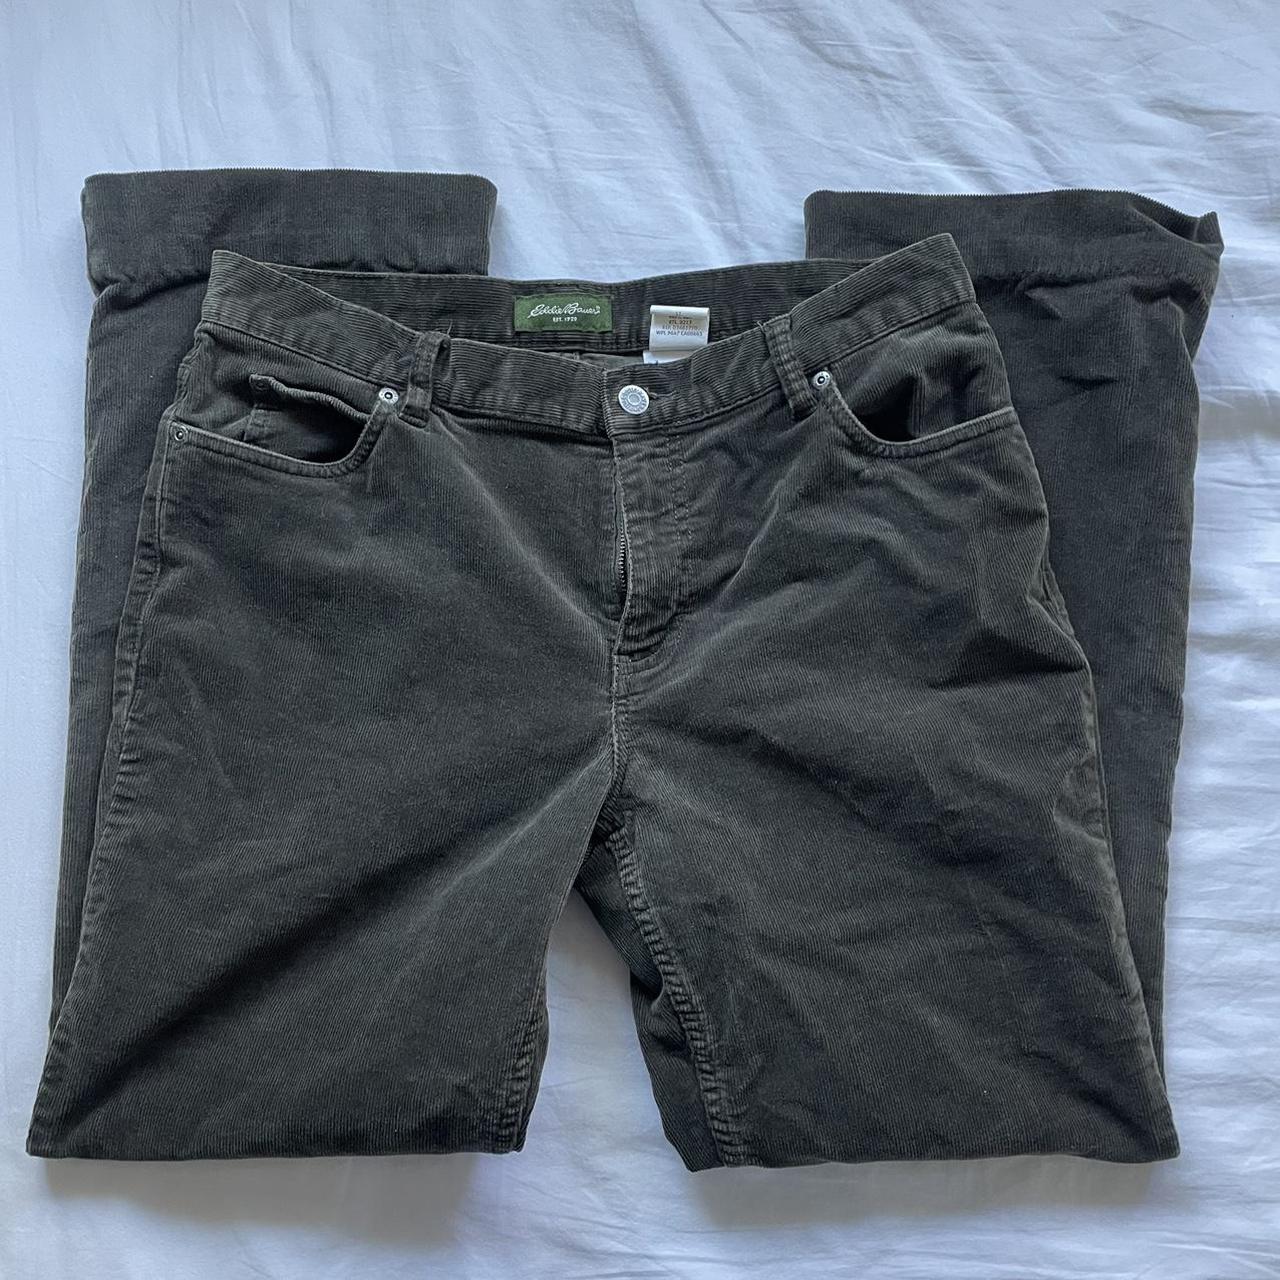 Eddie Bauer olive green corduroy slim fit pants with... - Depop